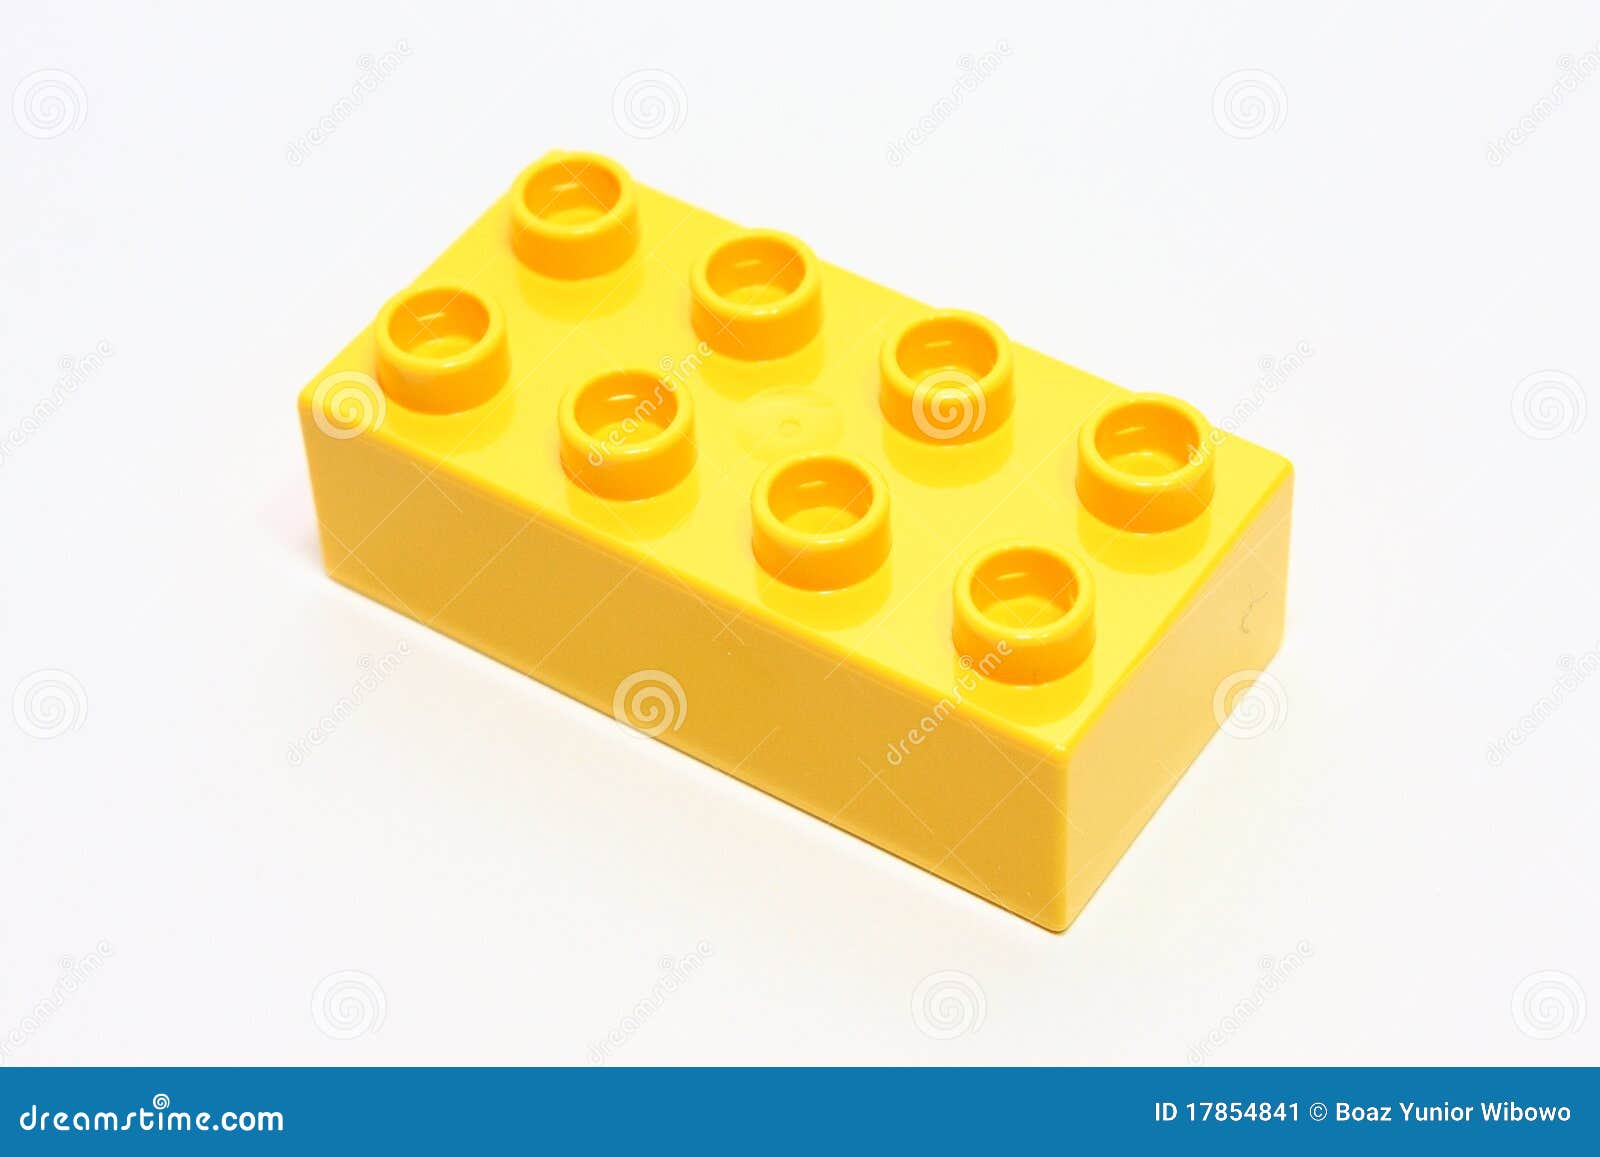 yellow lego